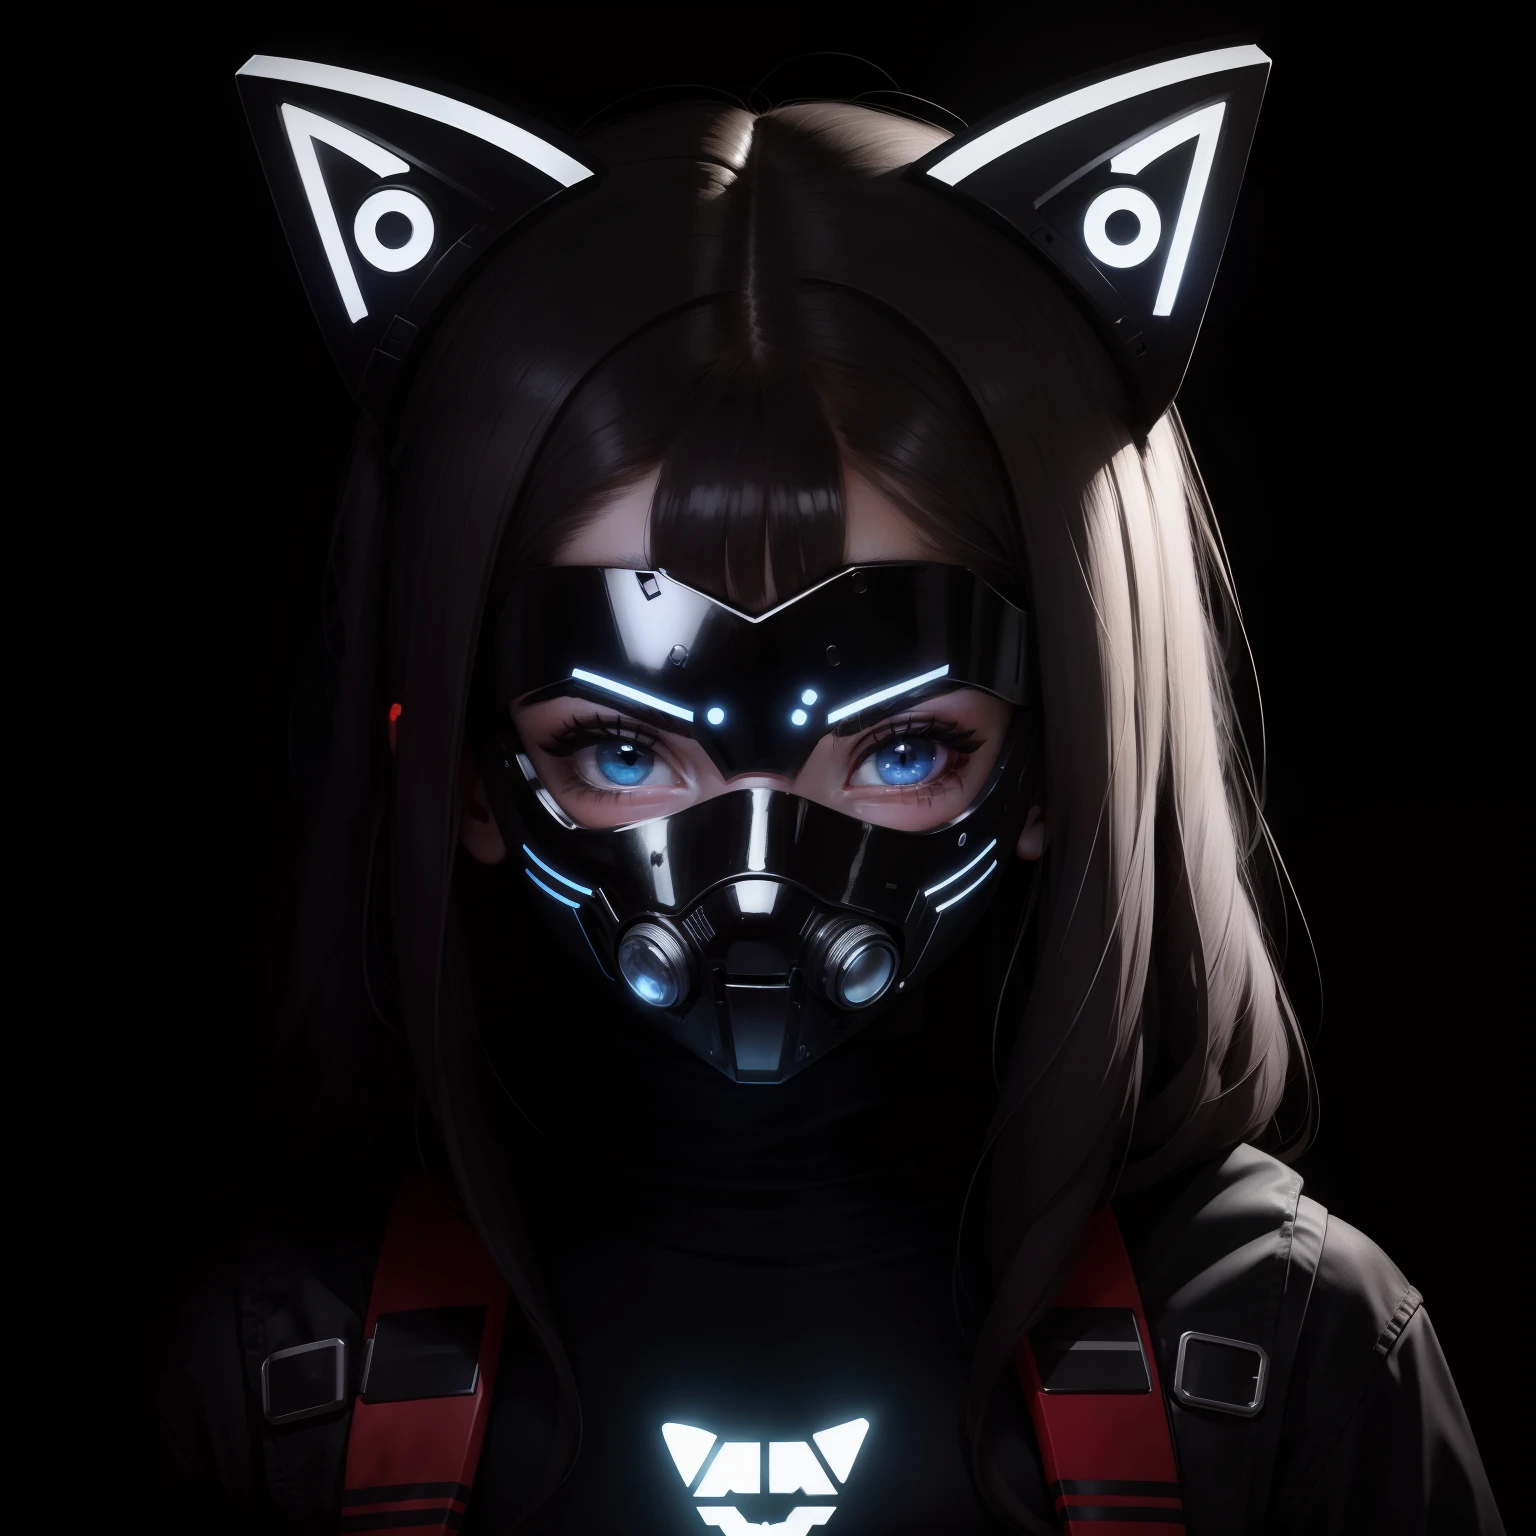 Personaje para el logo de PFP de una niña que lleva una máscara LED cibernética que cubre su rostro, Los LED de la máscara forman un gato.